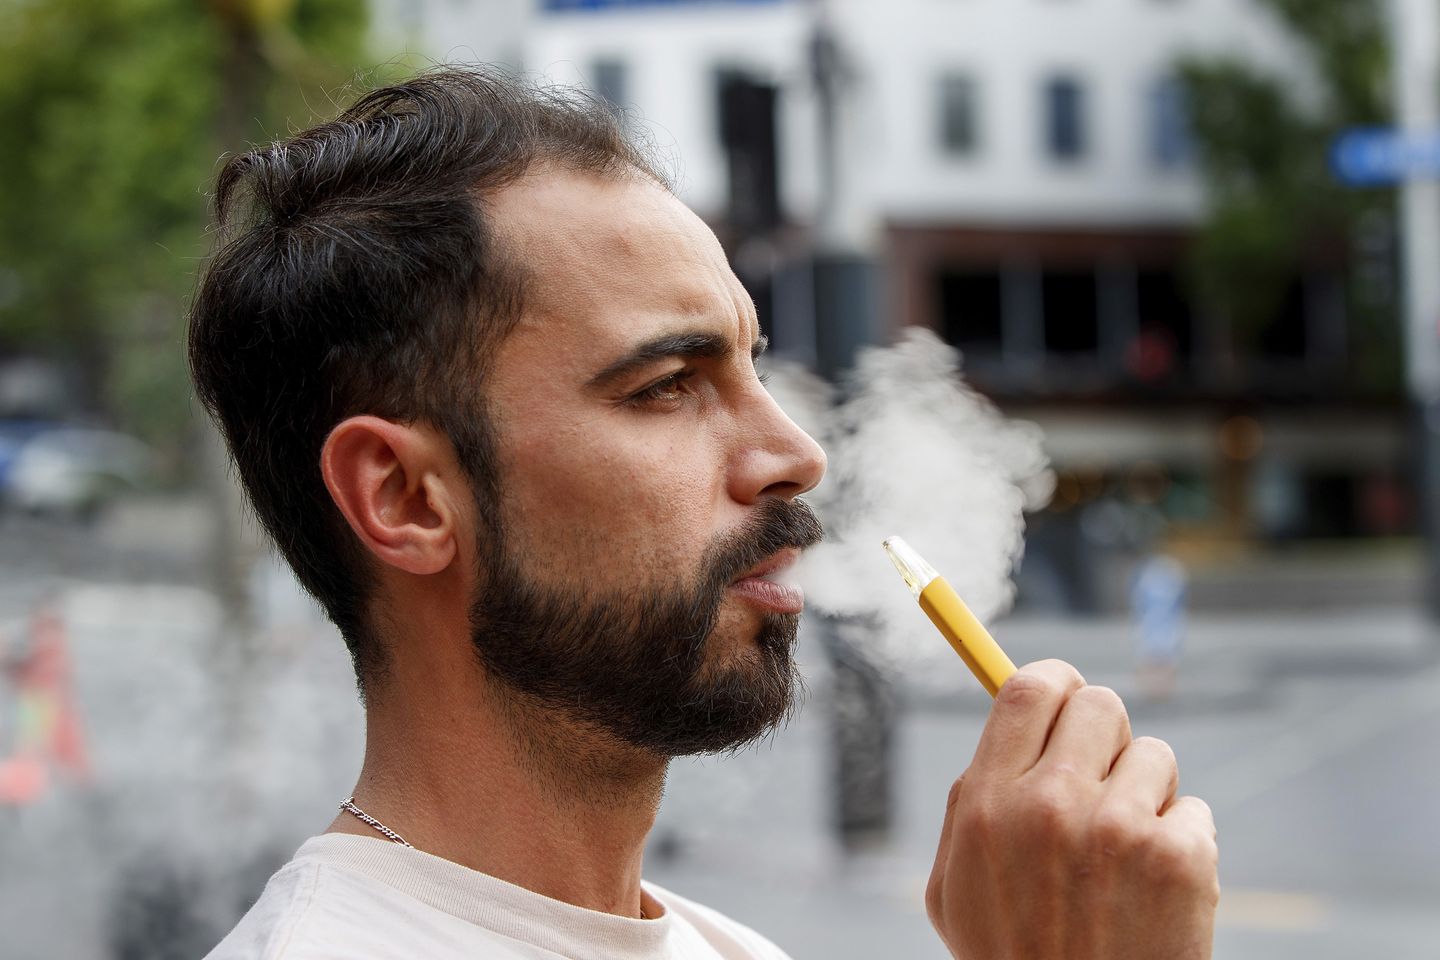 Yeni Zelanda, 2009 ve sonrasında doğanların sigara almasını yasaklıyor